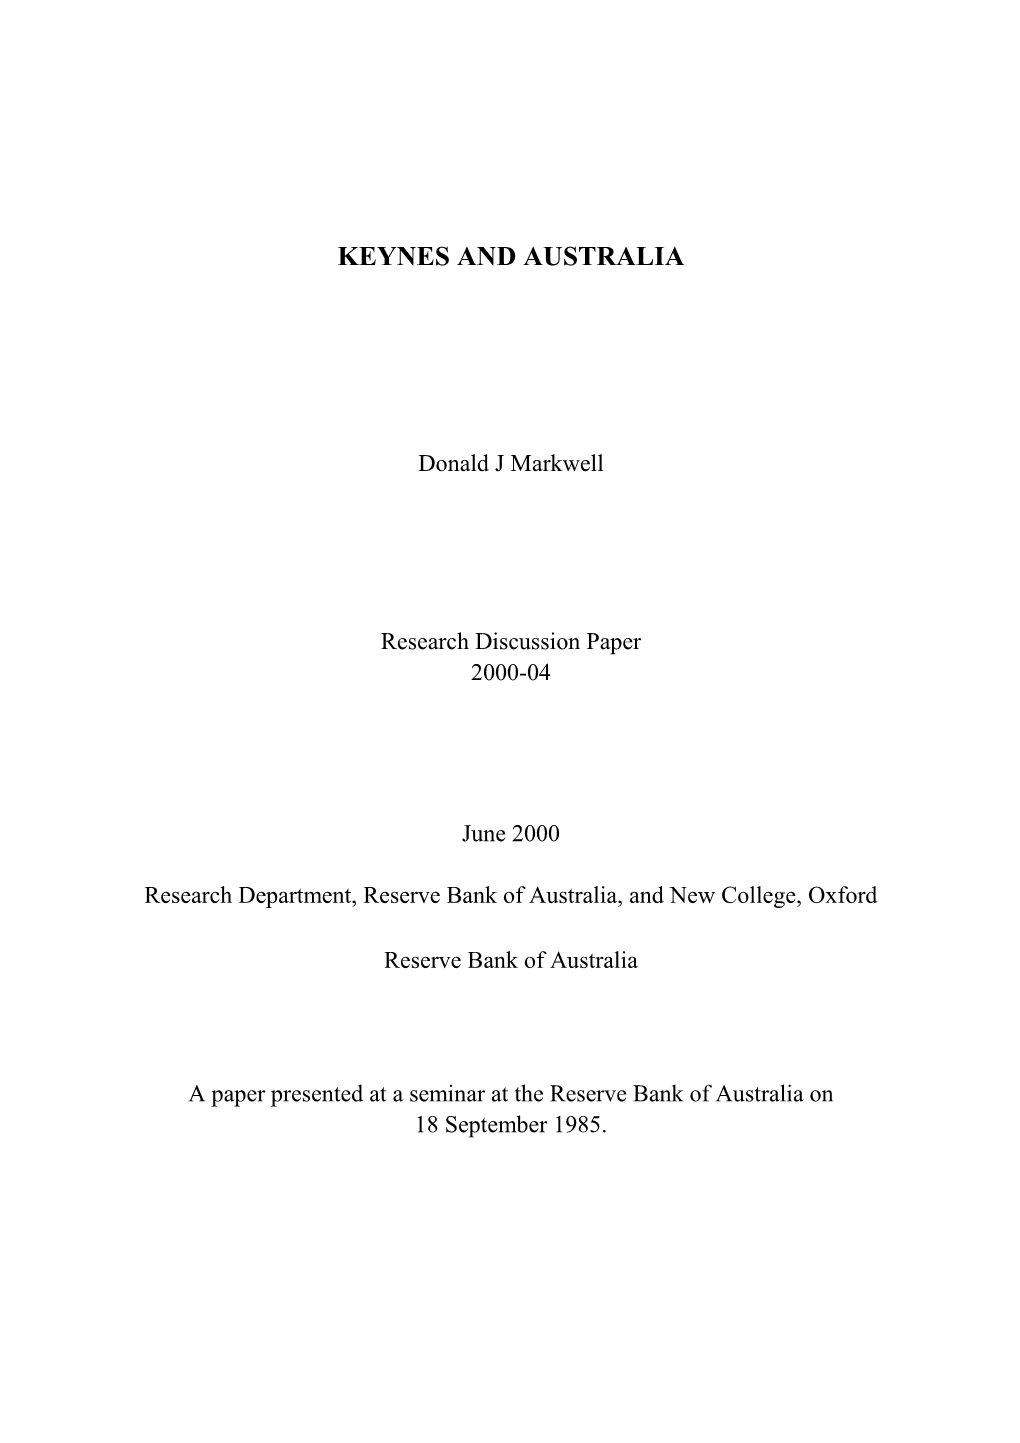 Keynes and Australia